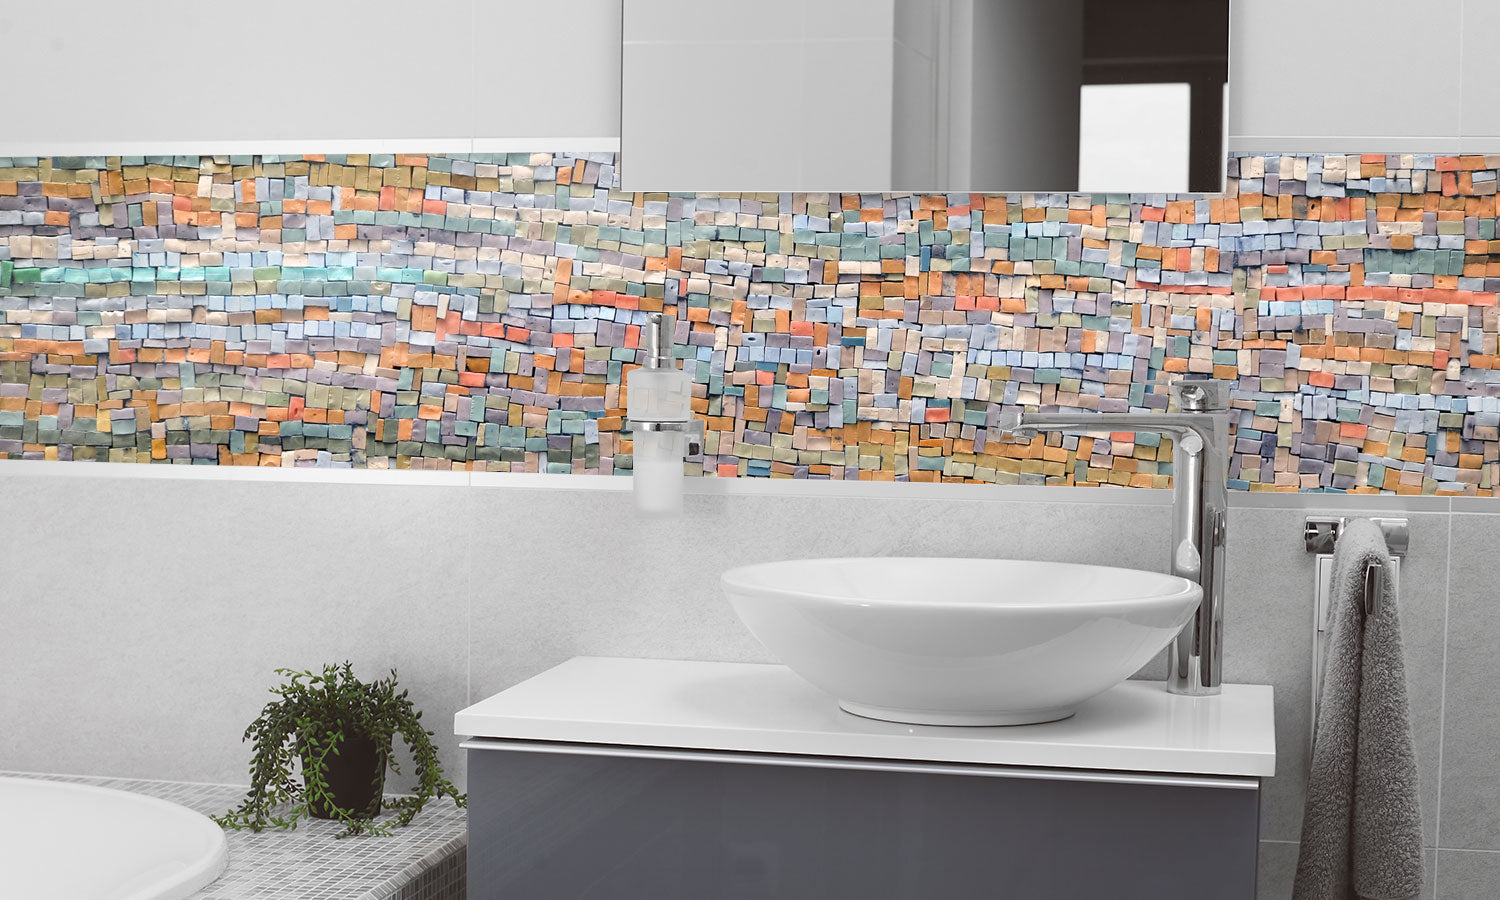 Paneli za kuhinje Old orange tiles -  Stakleni / PVC ploče / Pleksiglas -  sa printom za kuhinju, Zidne obloge PKU102